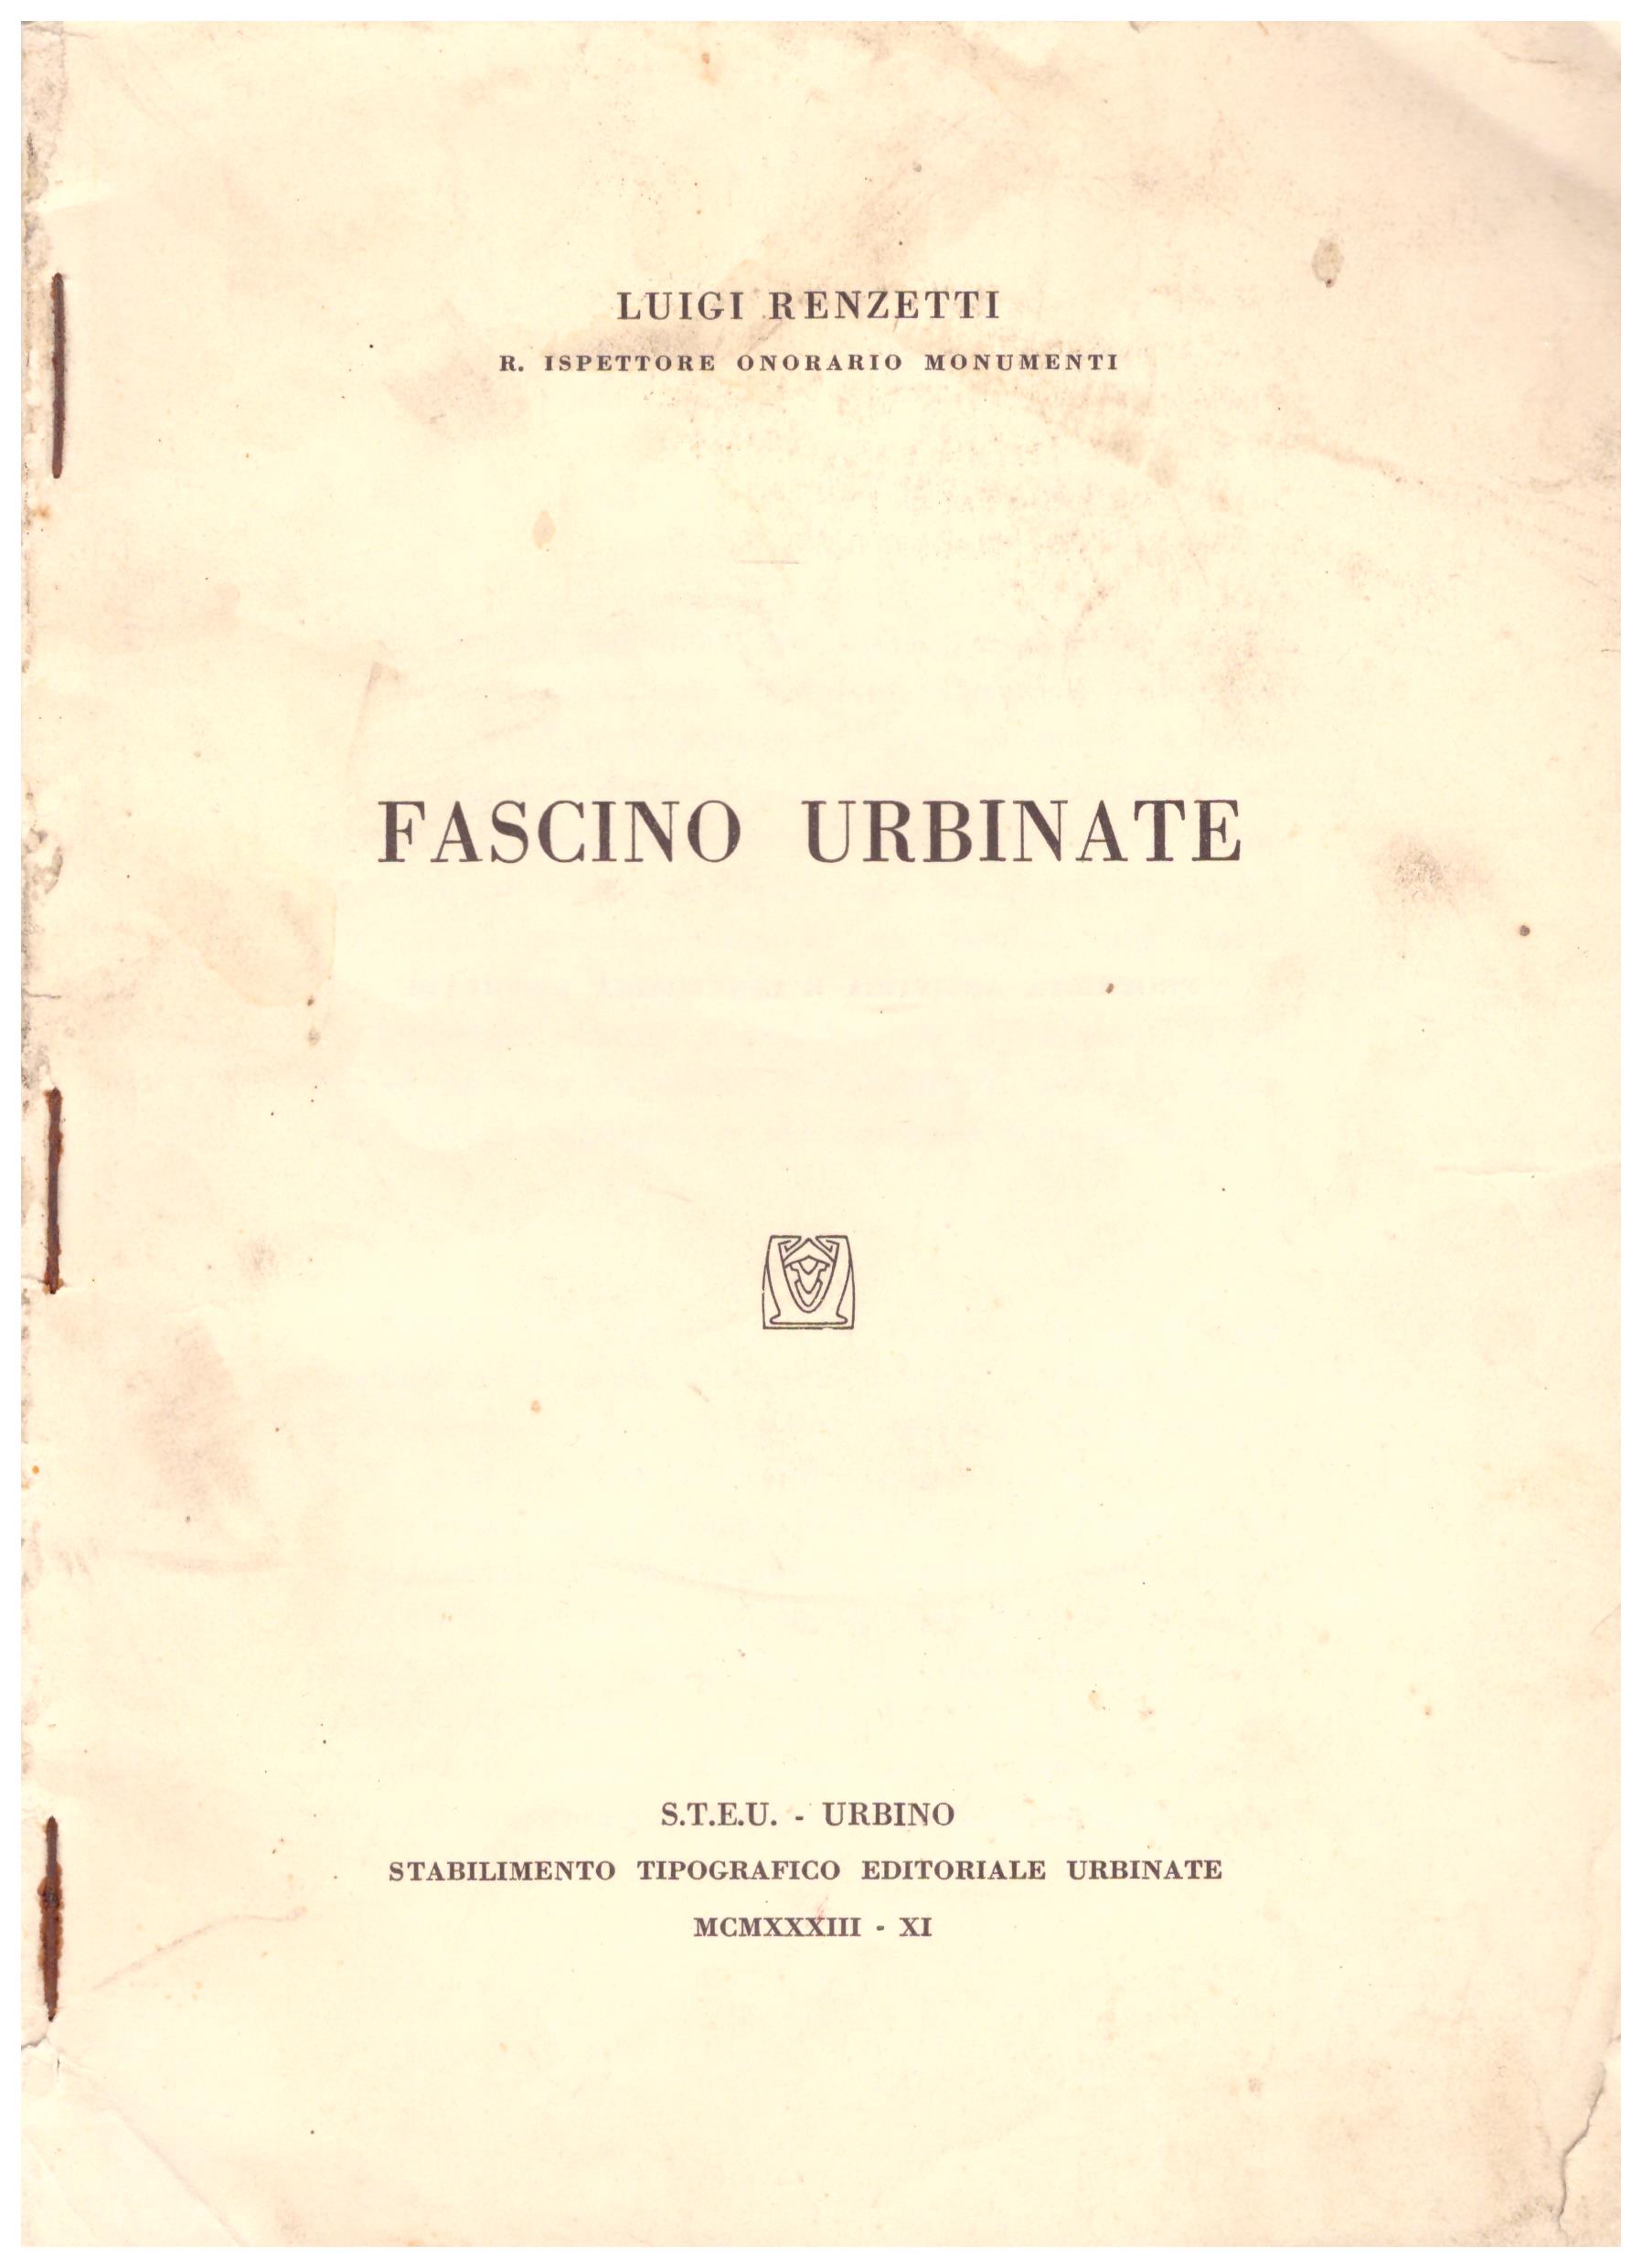 Titolo: Fascino Urbinate  Autore : Luigi Renzetti  Editore: S.T.E.U.-URBINO stabilimento tipografico editoriale urbinate